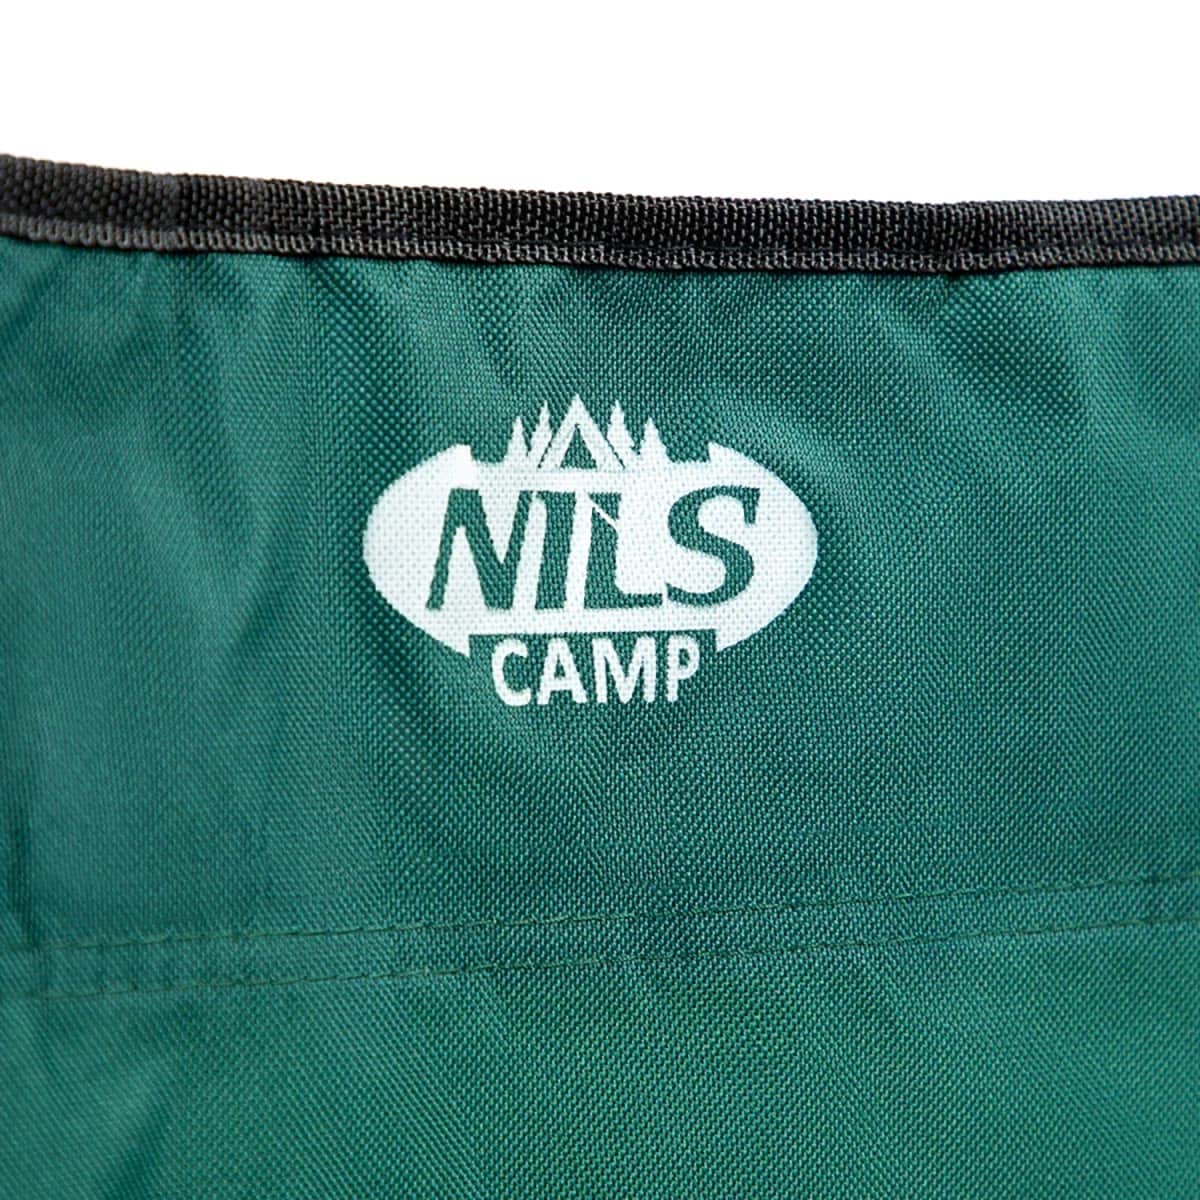 Krzesło turystyczne Nils Camp NC3044 - Zielone